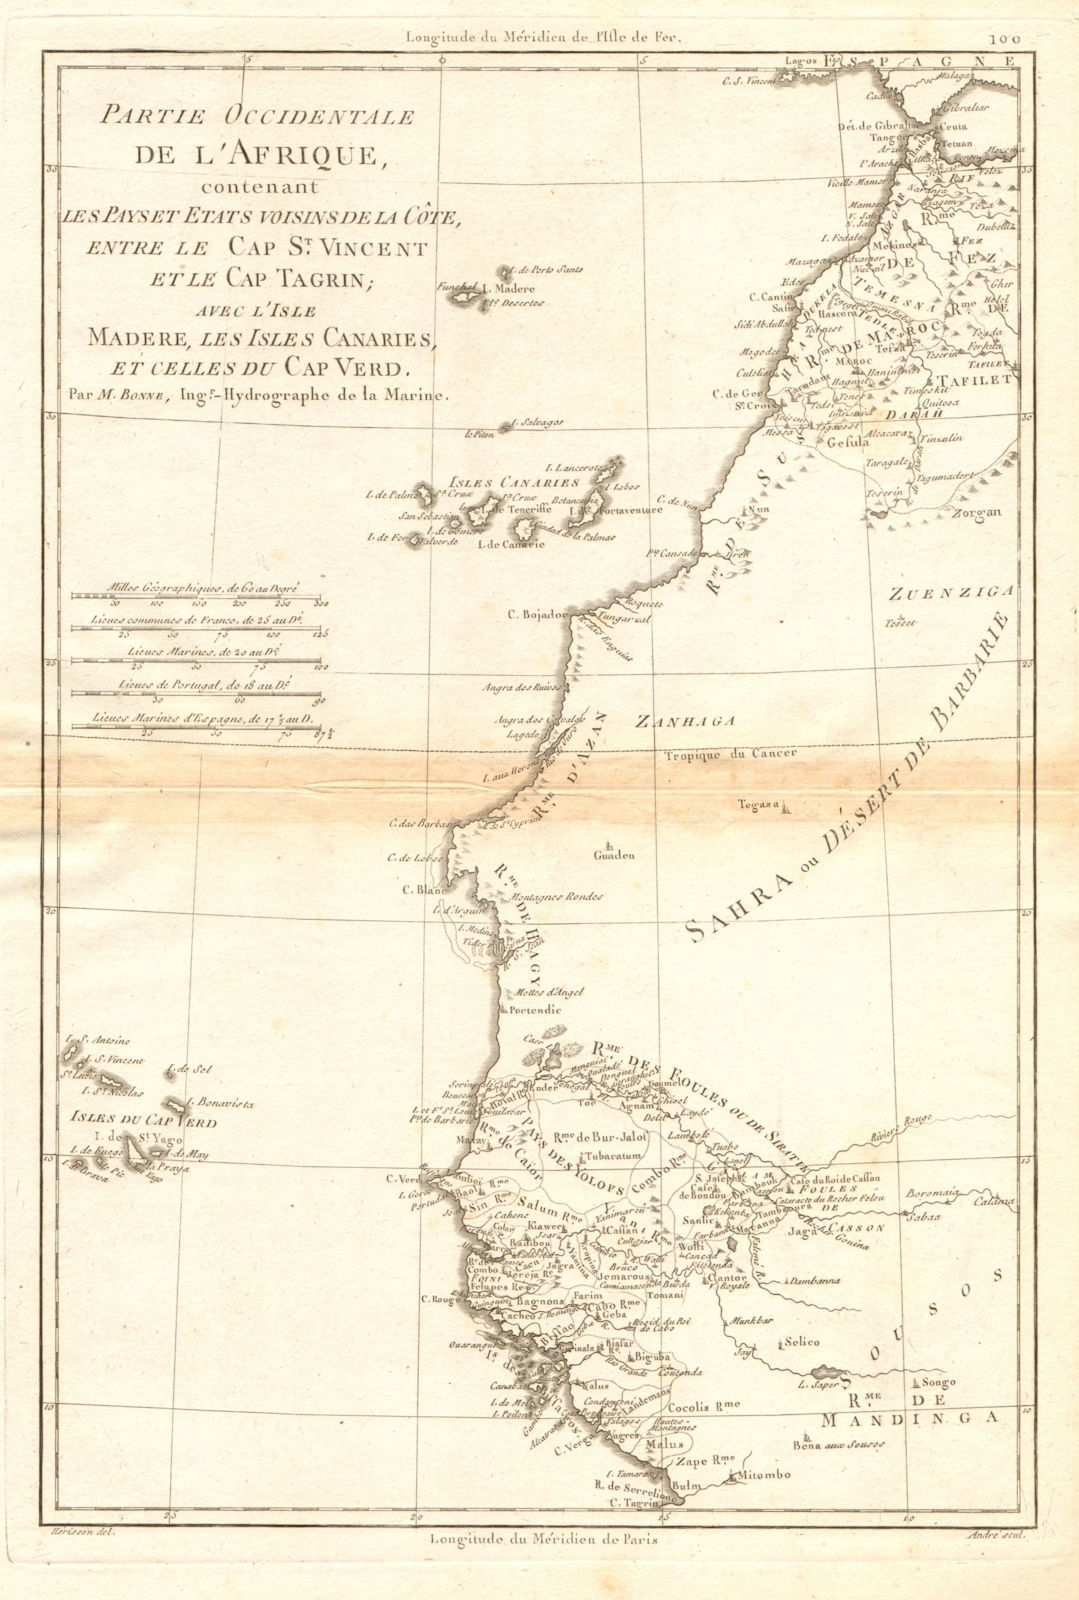 Associate Product Partie Occidentale de l’Afrique. West Africa coast Canary islands BONNE 1788 map